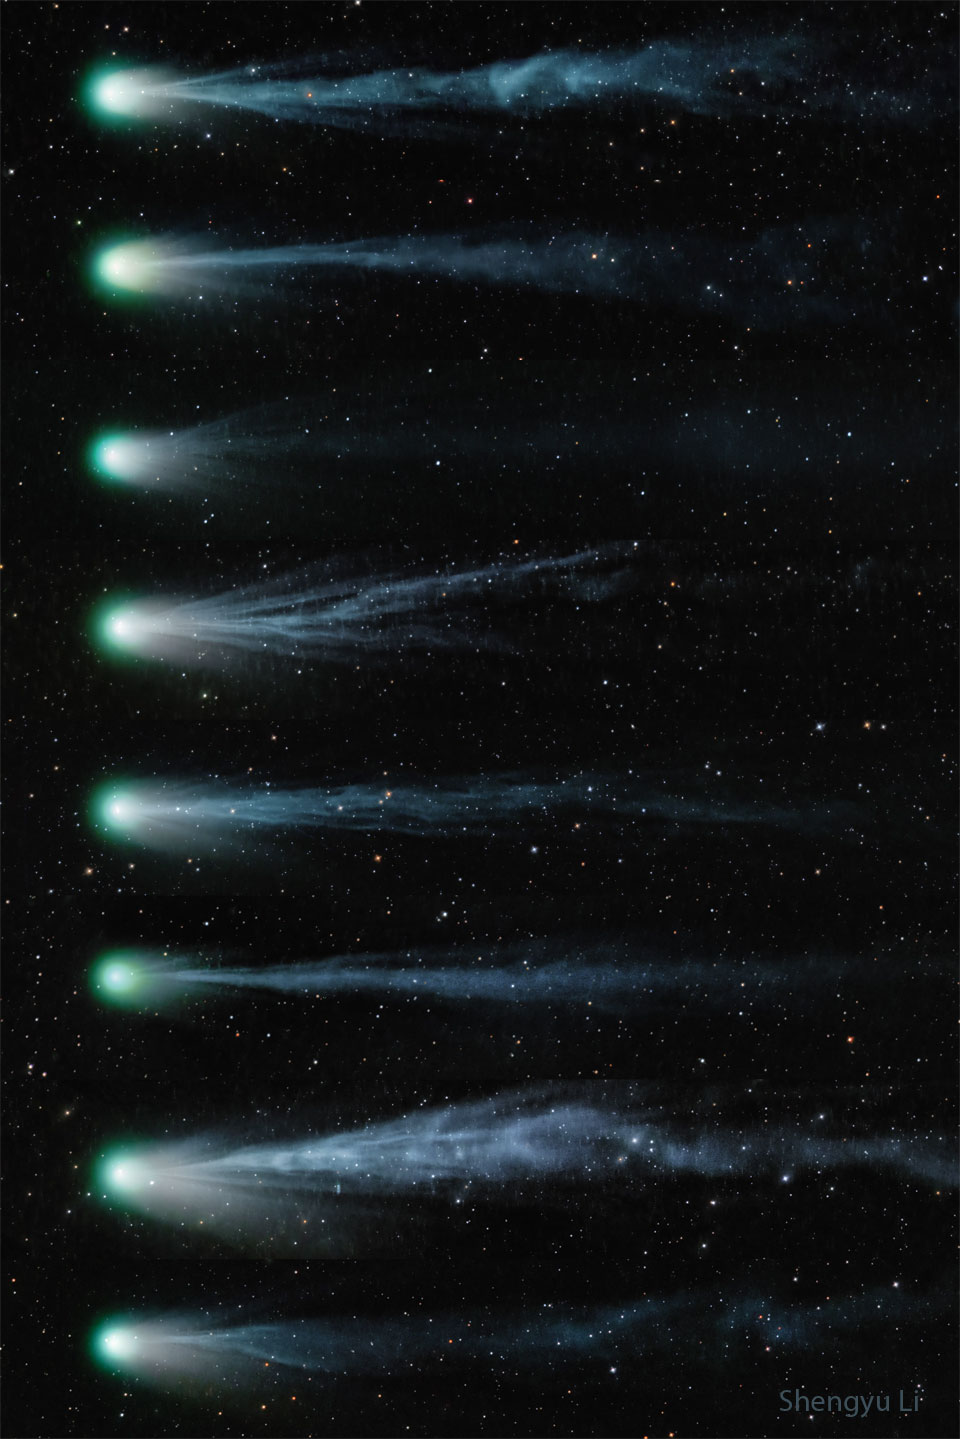 这张由8张从上到下的庞士-布鲁克斯彗星照片组成的序列，显示了彗星及其在 9 天内不断变化的彗尾。离子尾在每张图像中看起来非常不同，有时比其他时候要复杂得多。有关更多详细信息，请参阅说明。